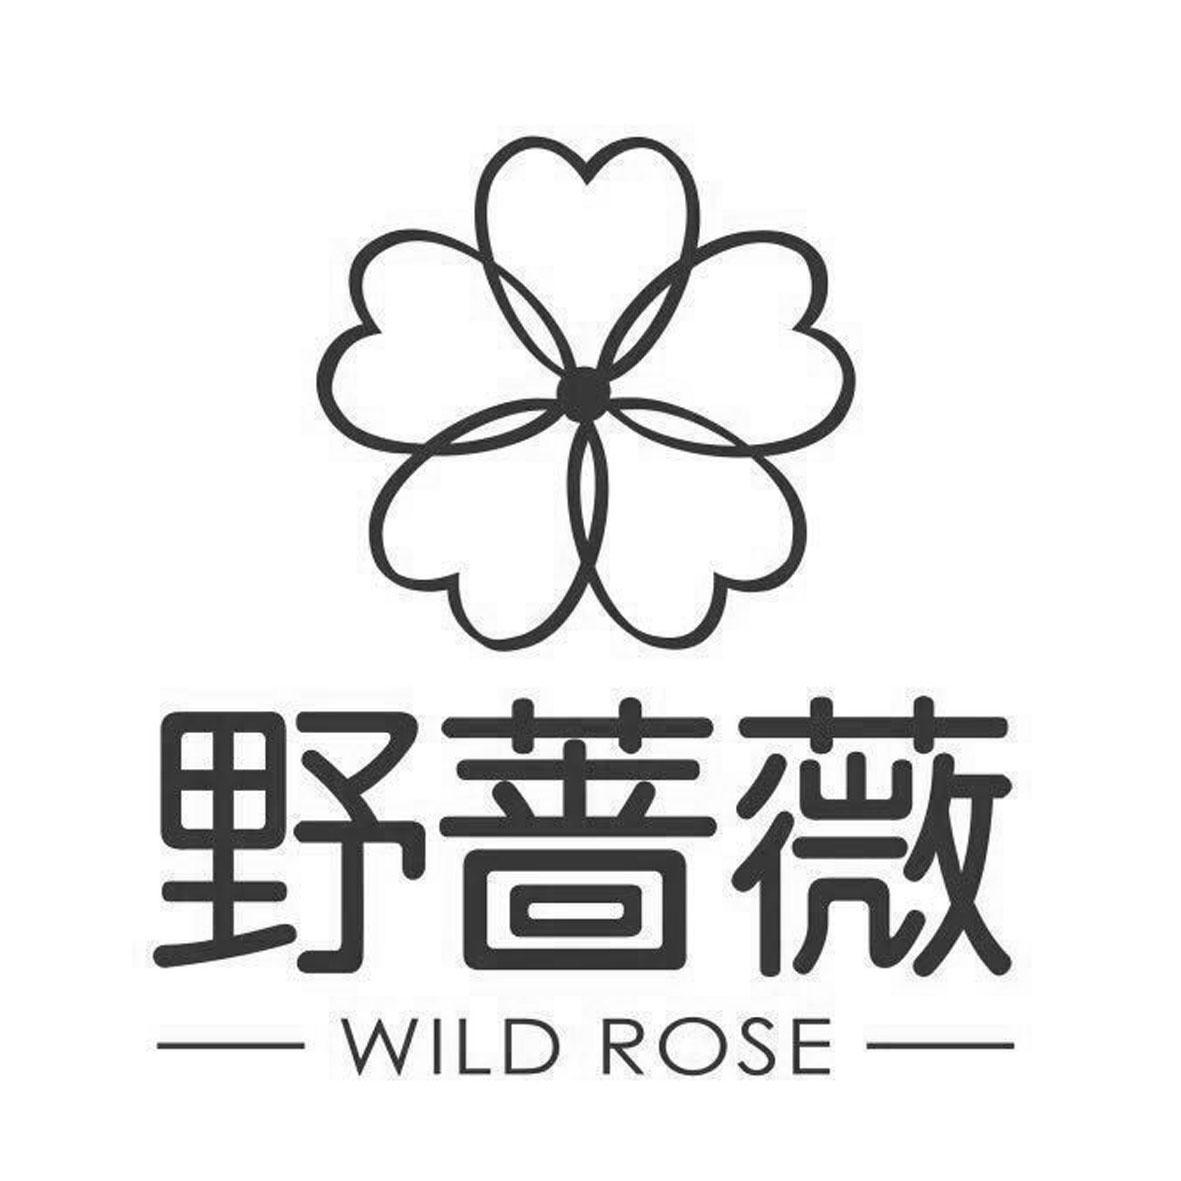 野蔷薇 wild rose